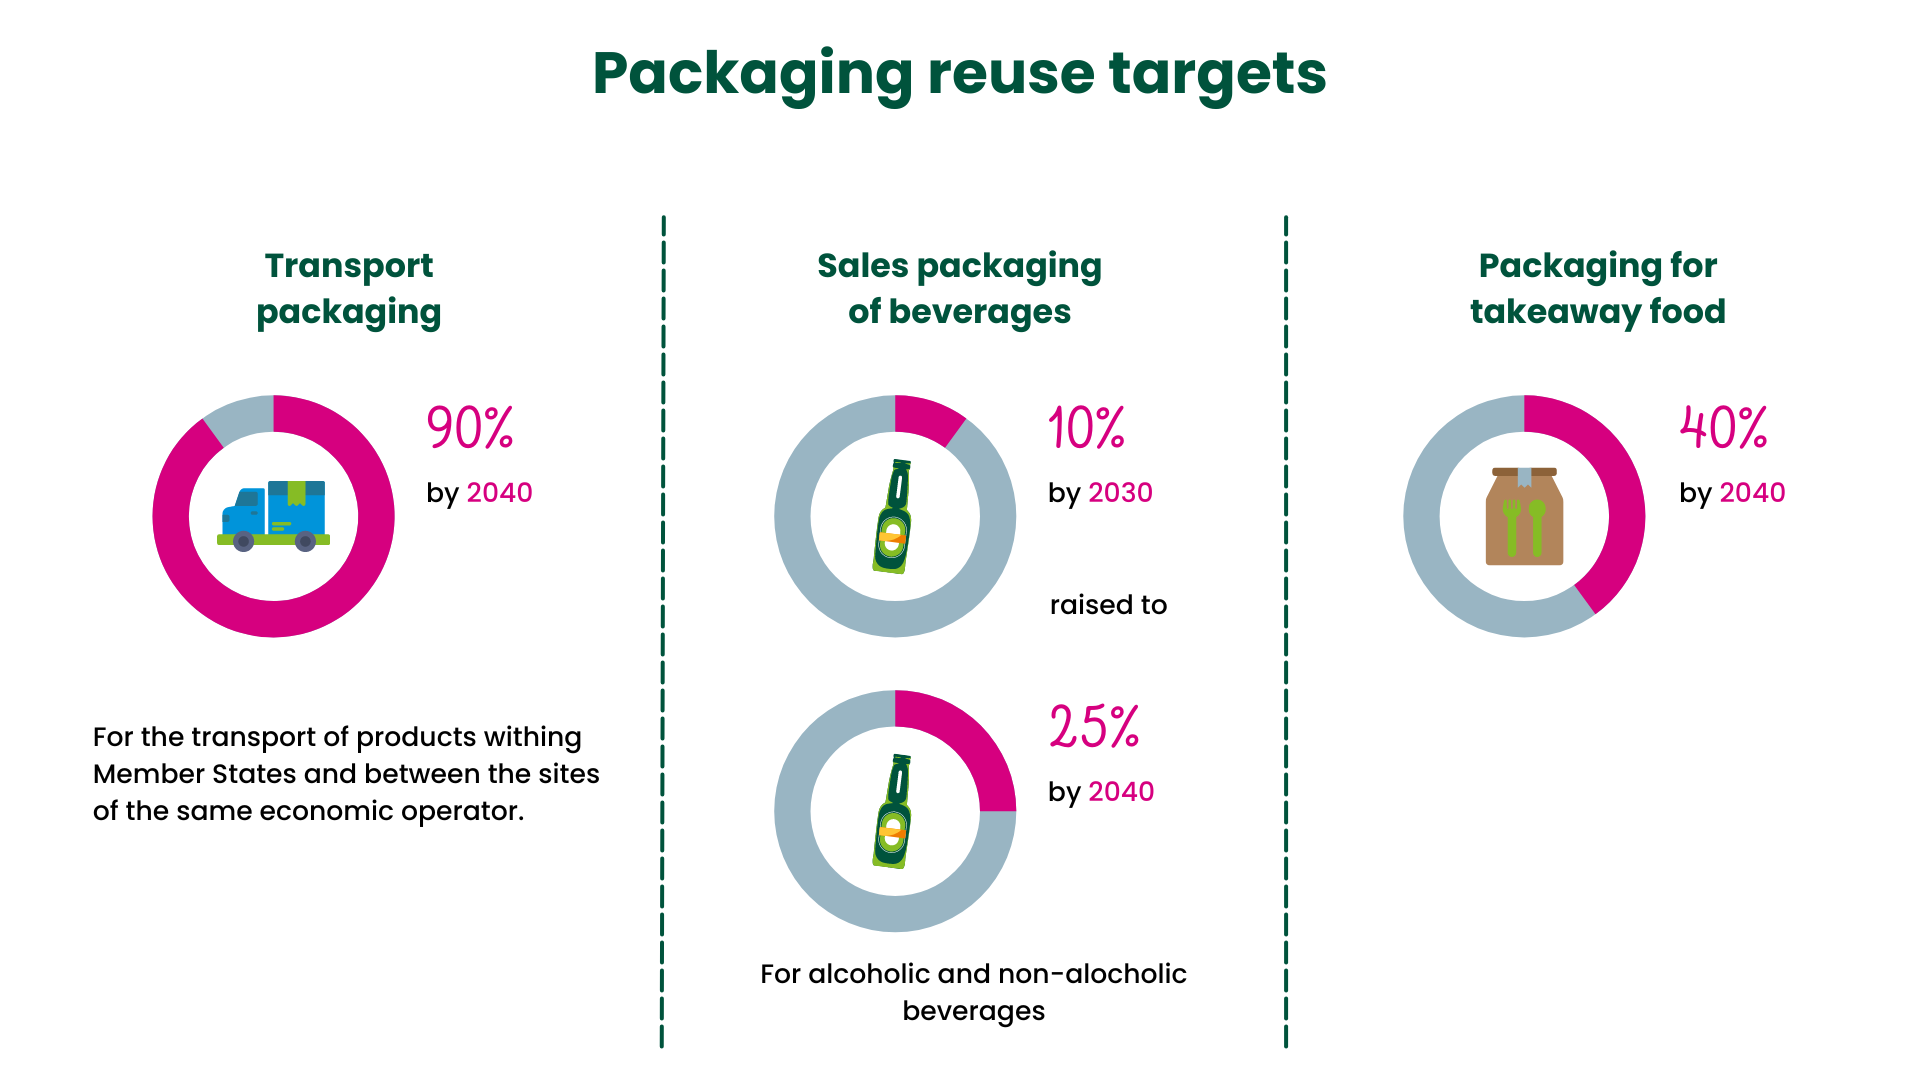 Packaging and Packaging Waste Regulation - Packaging reuse targets in the EU